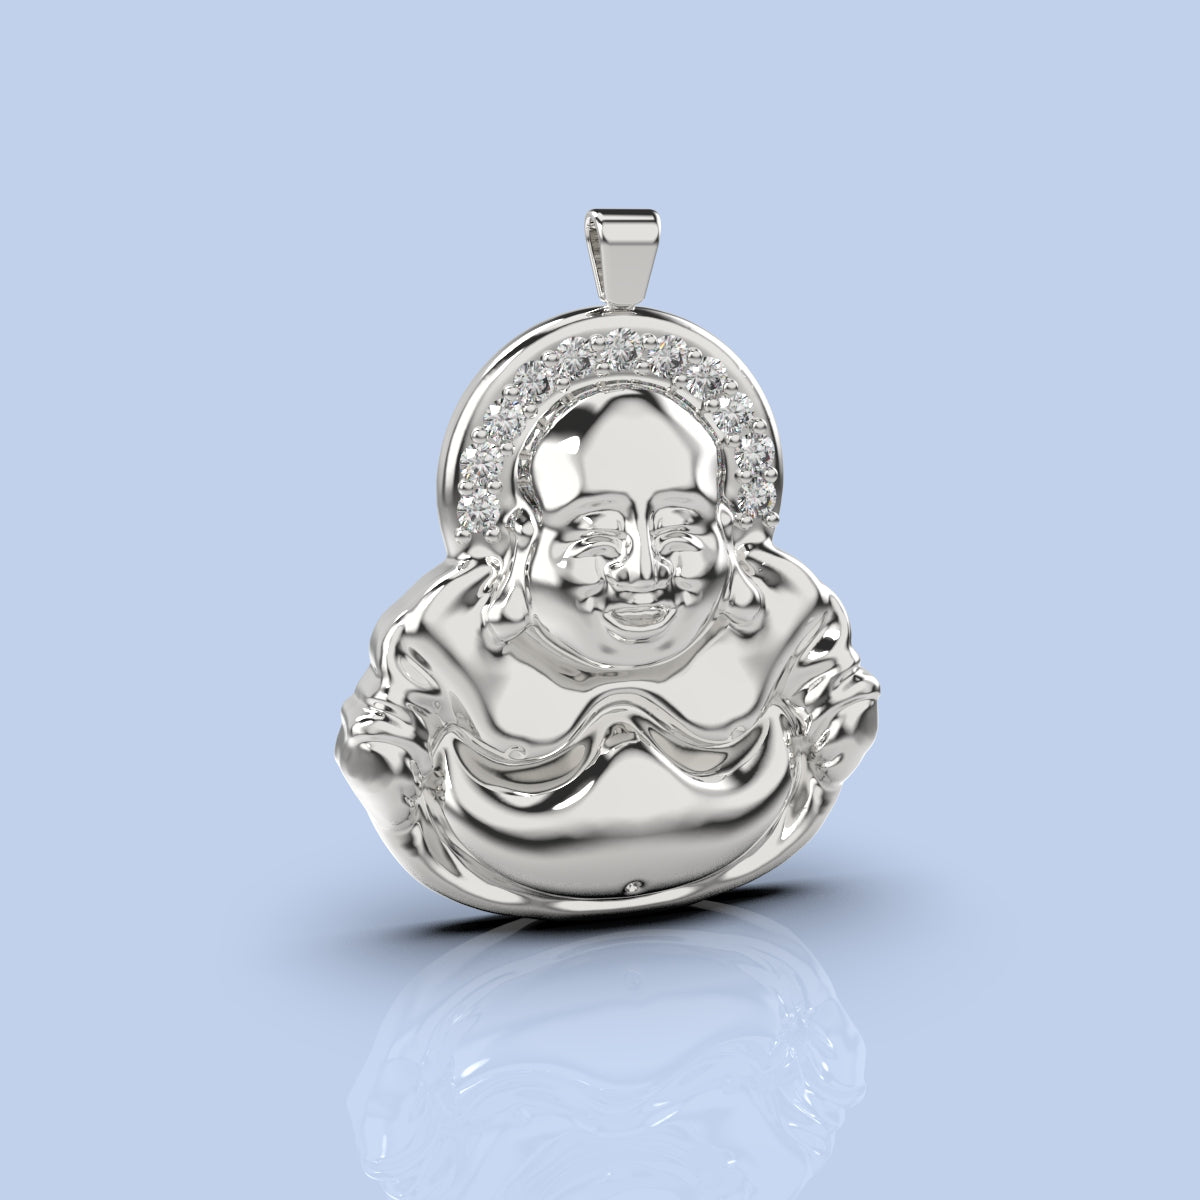 budha pendant with diamonds